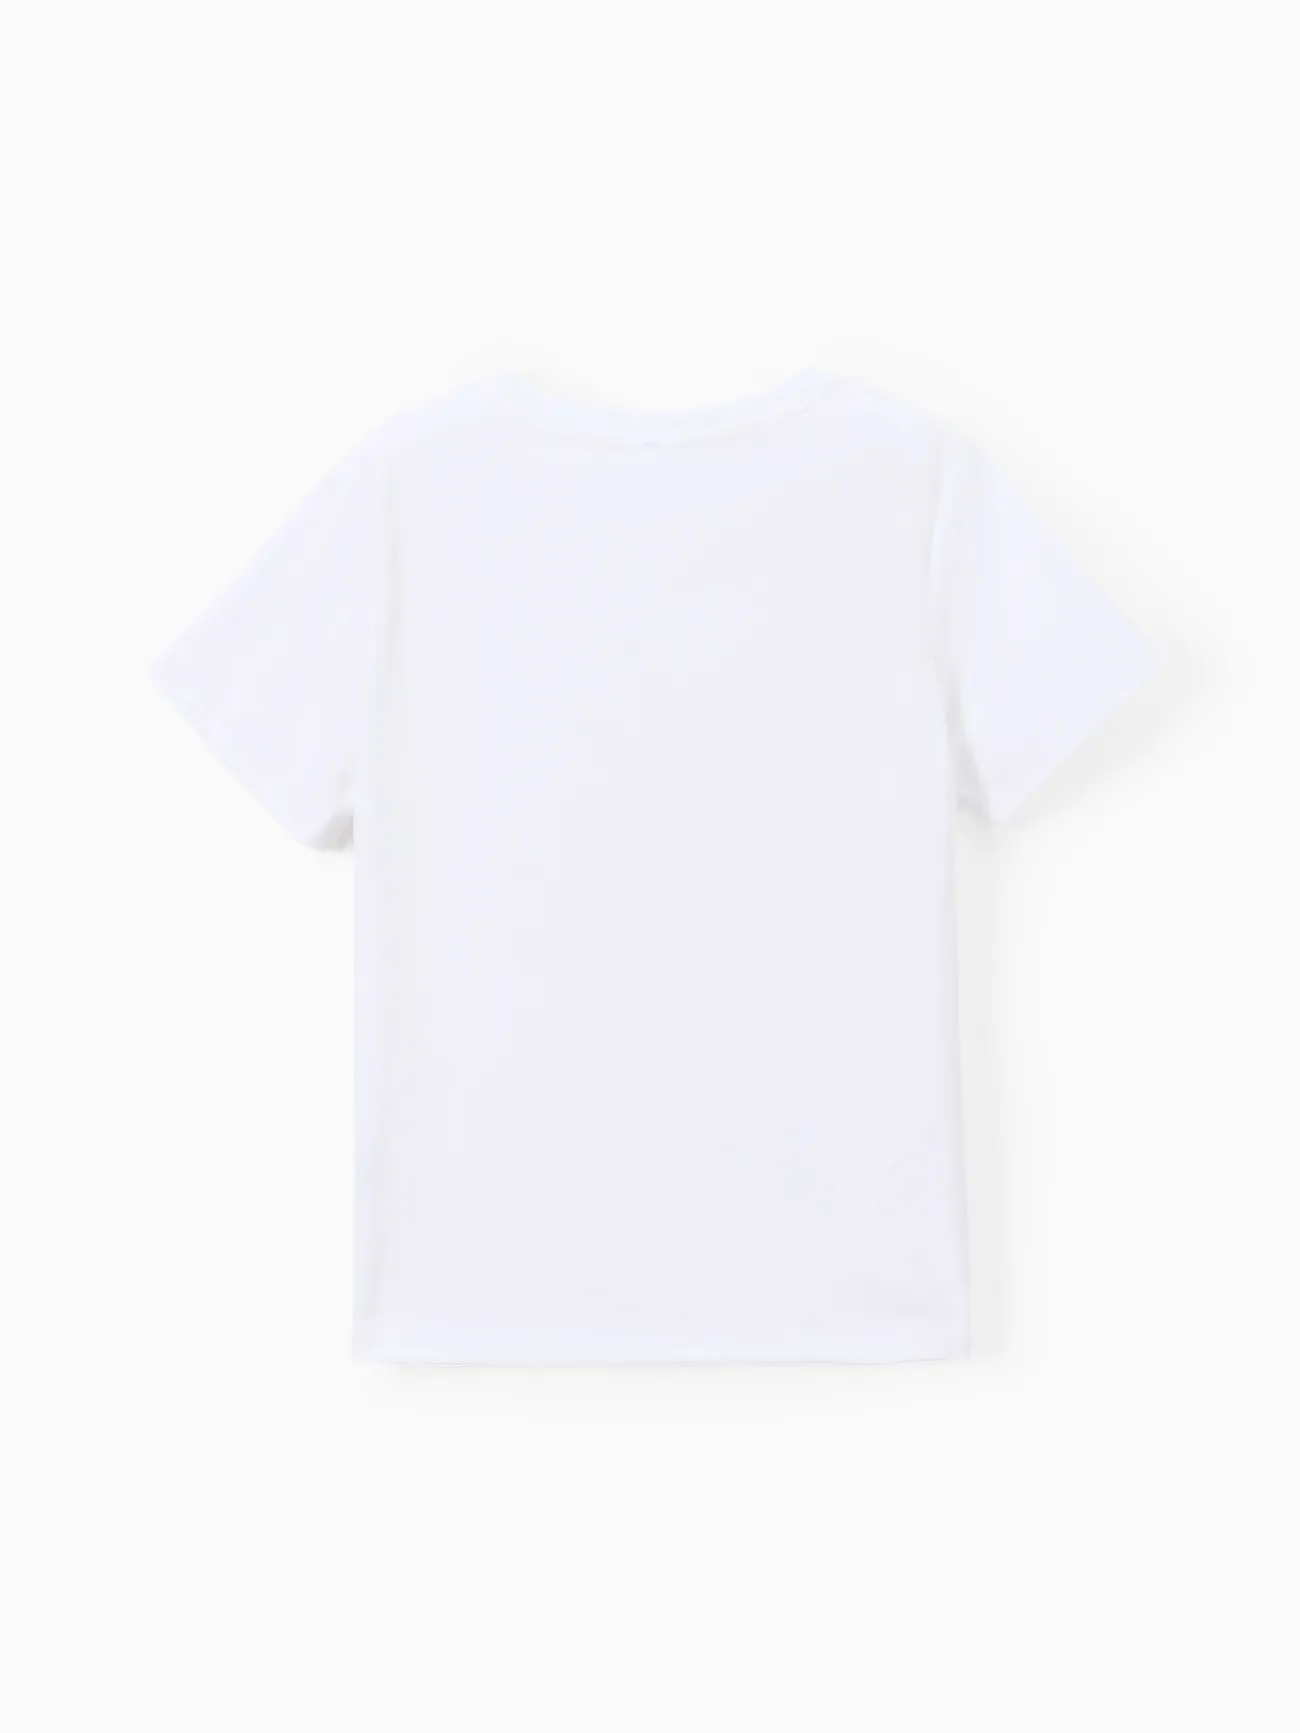 Camisetas Go-Neat repelentes al agua y resistentes a las manchas para niños Blanco big image 1